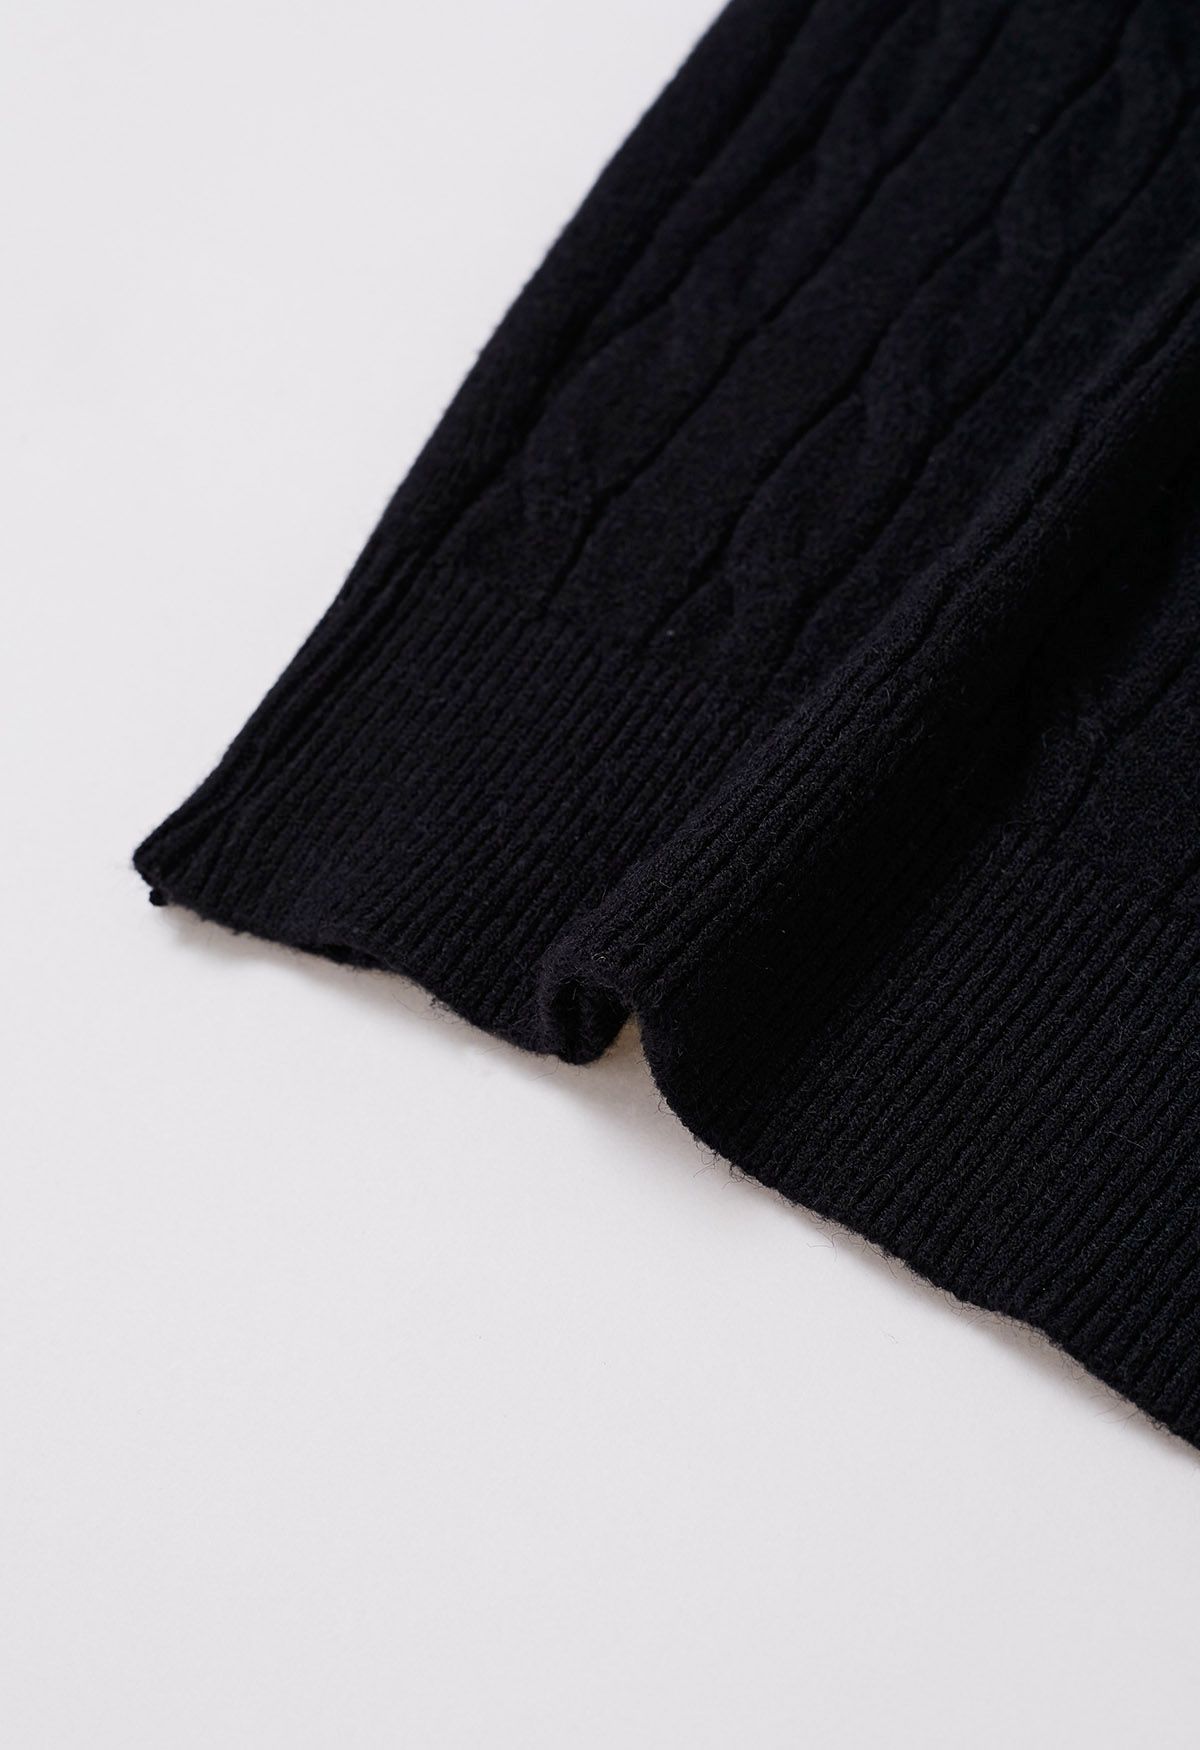 Suéter de punto de cable con cuello alto suave y difuso en negro